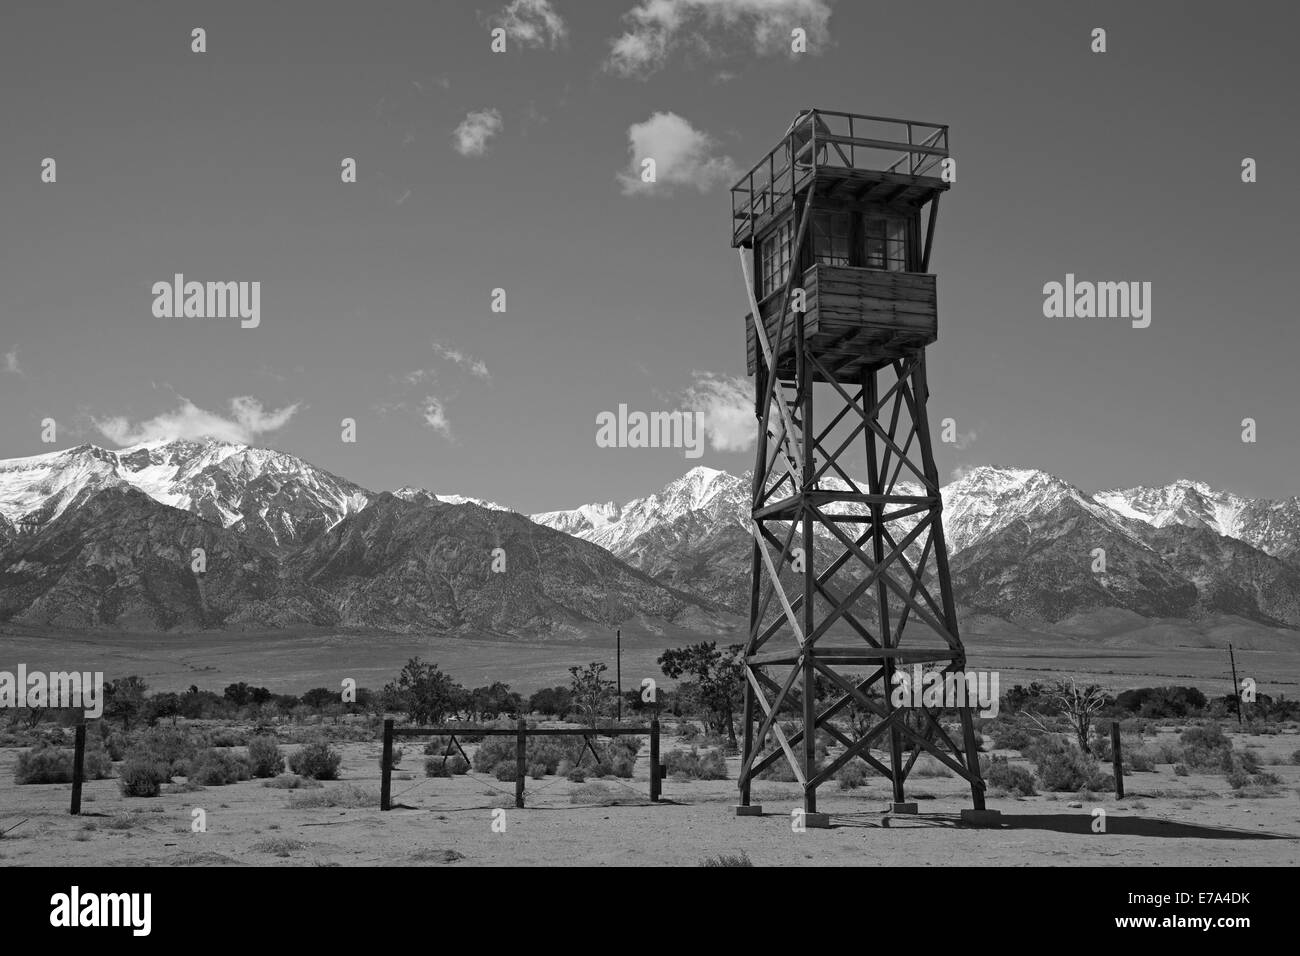 Manzanar War Relocation Center (WWII campo di prigionia), e la catena montuosa della Sierra Nevada, vicino a Lone Pine, Owens Valley, California, Stati Uniti d'America Foto Stock